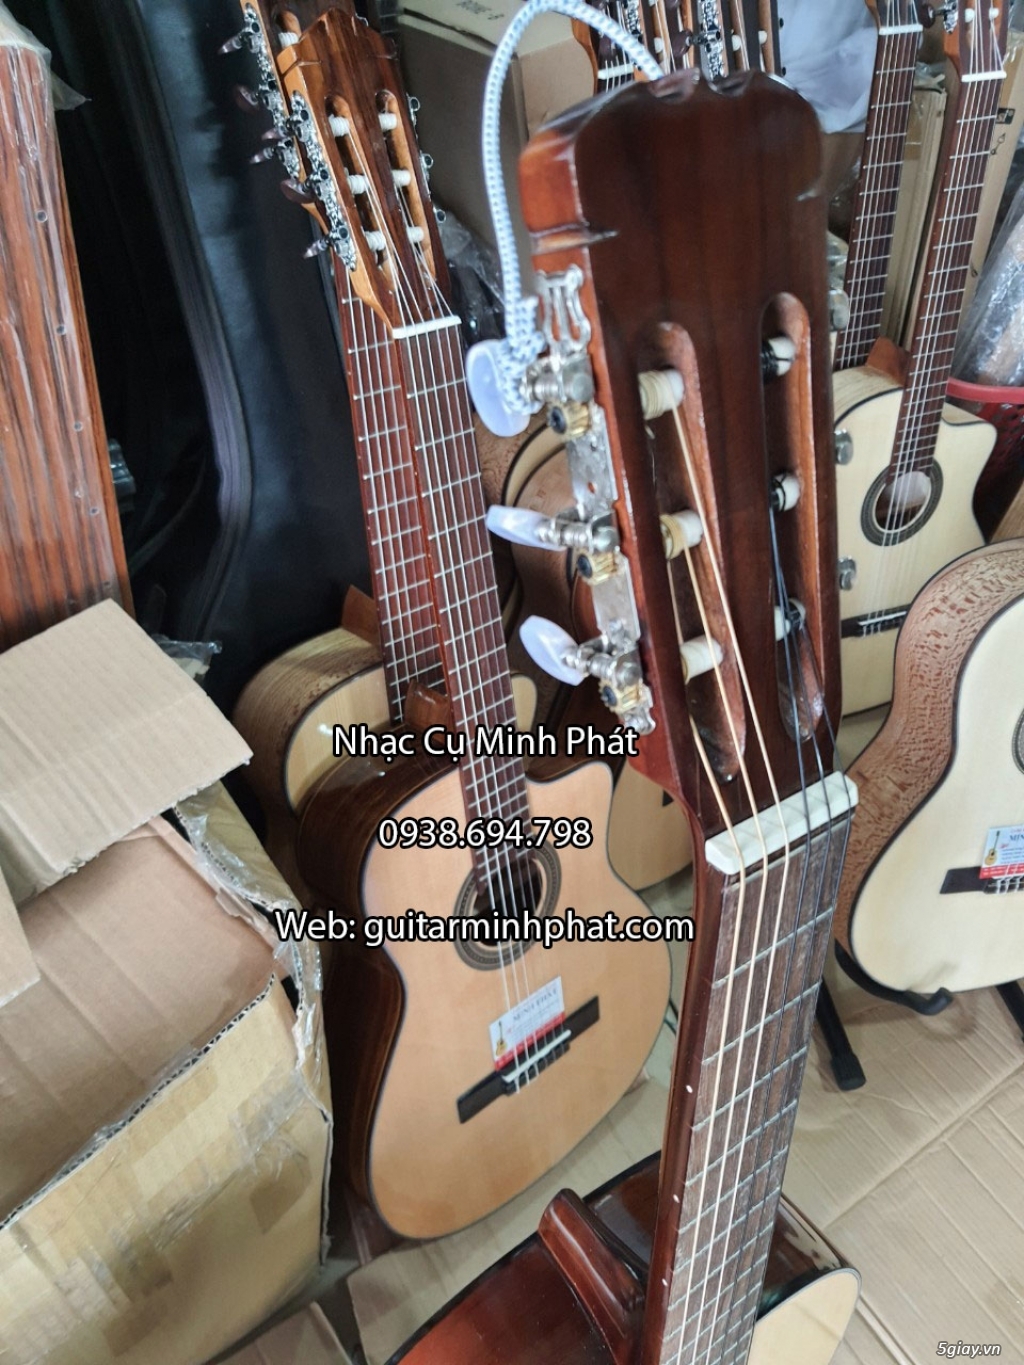 Bán đàn guitar, ukulele, kalimba giá rẻ ở quận Gò Vấp TPHCM - 22